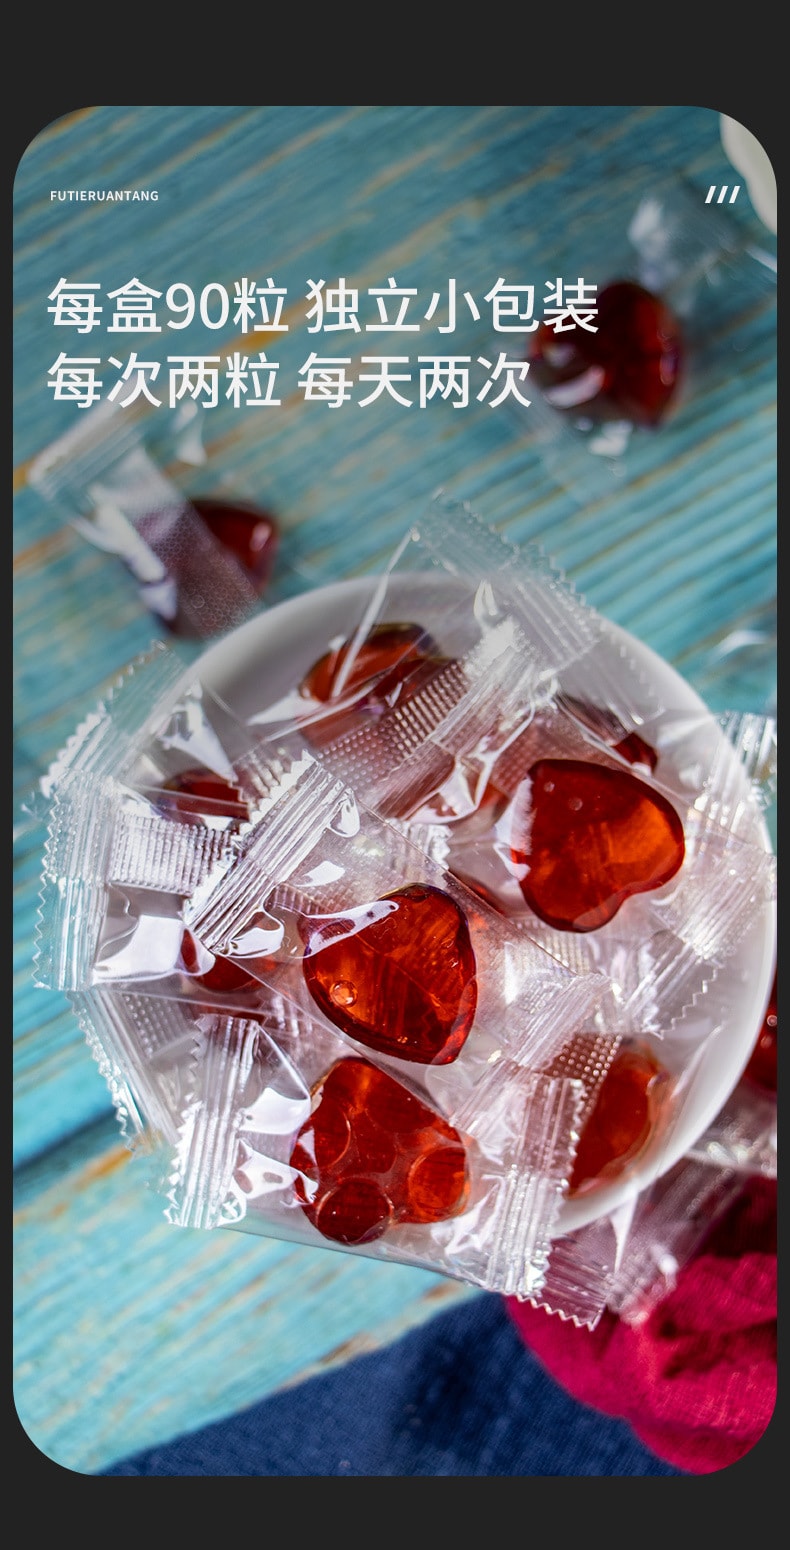 【中國直效郵件】漢諦堂富鐵軟糖 鐵元素+維生素 女性維生素C西梅橡皮凝膠 90g/盒